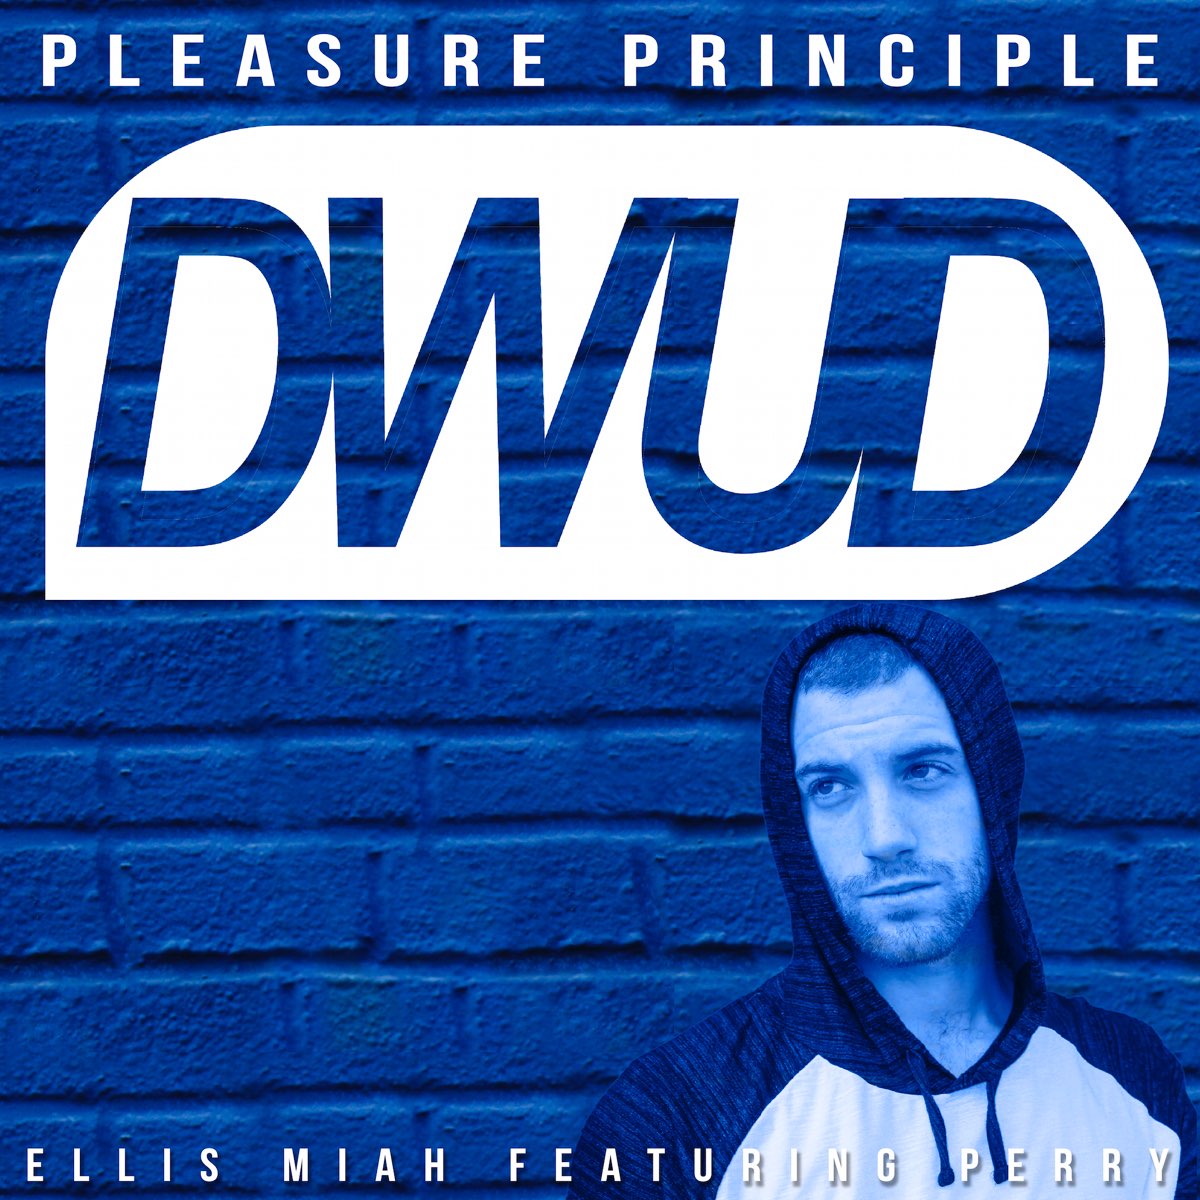 Pleasure песня. The pleasure principle.